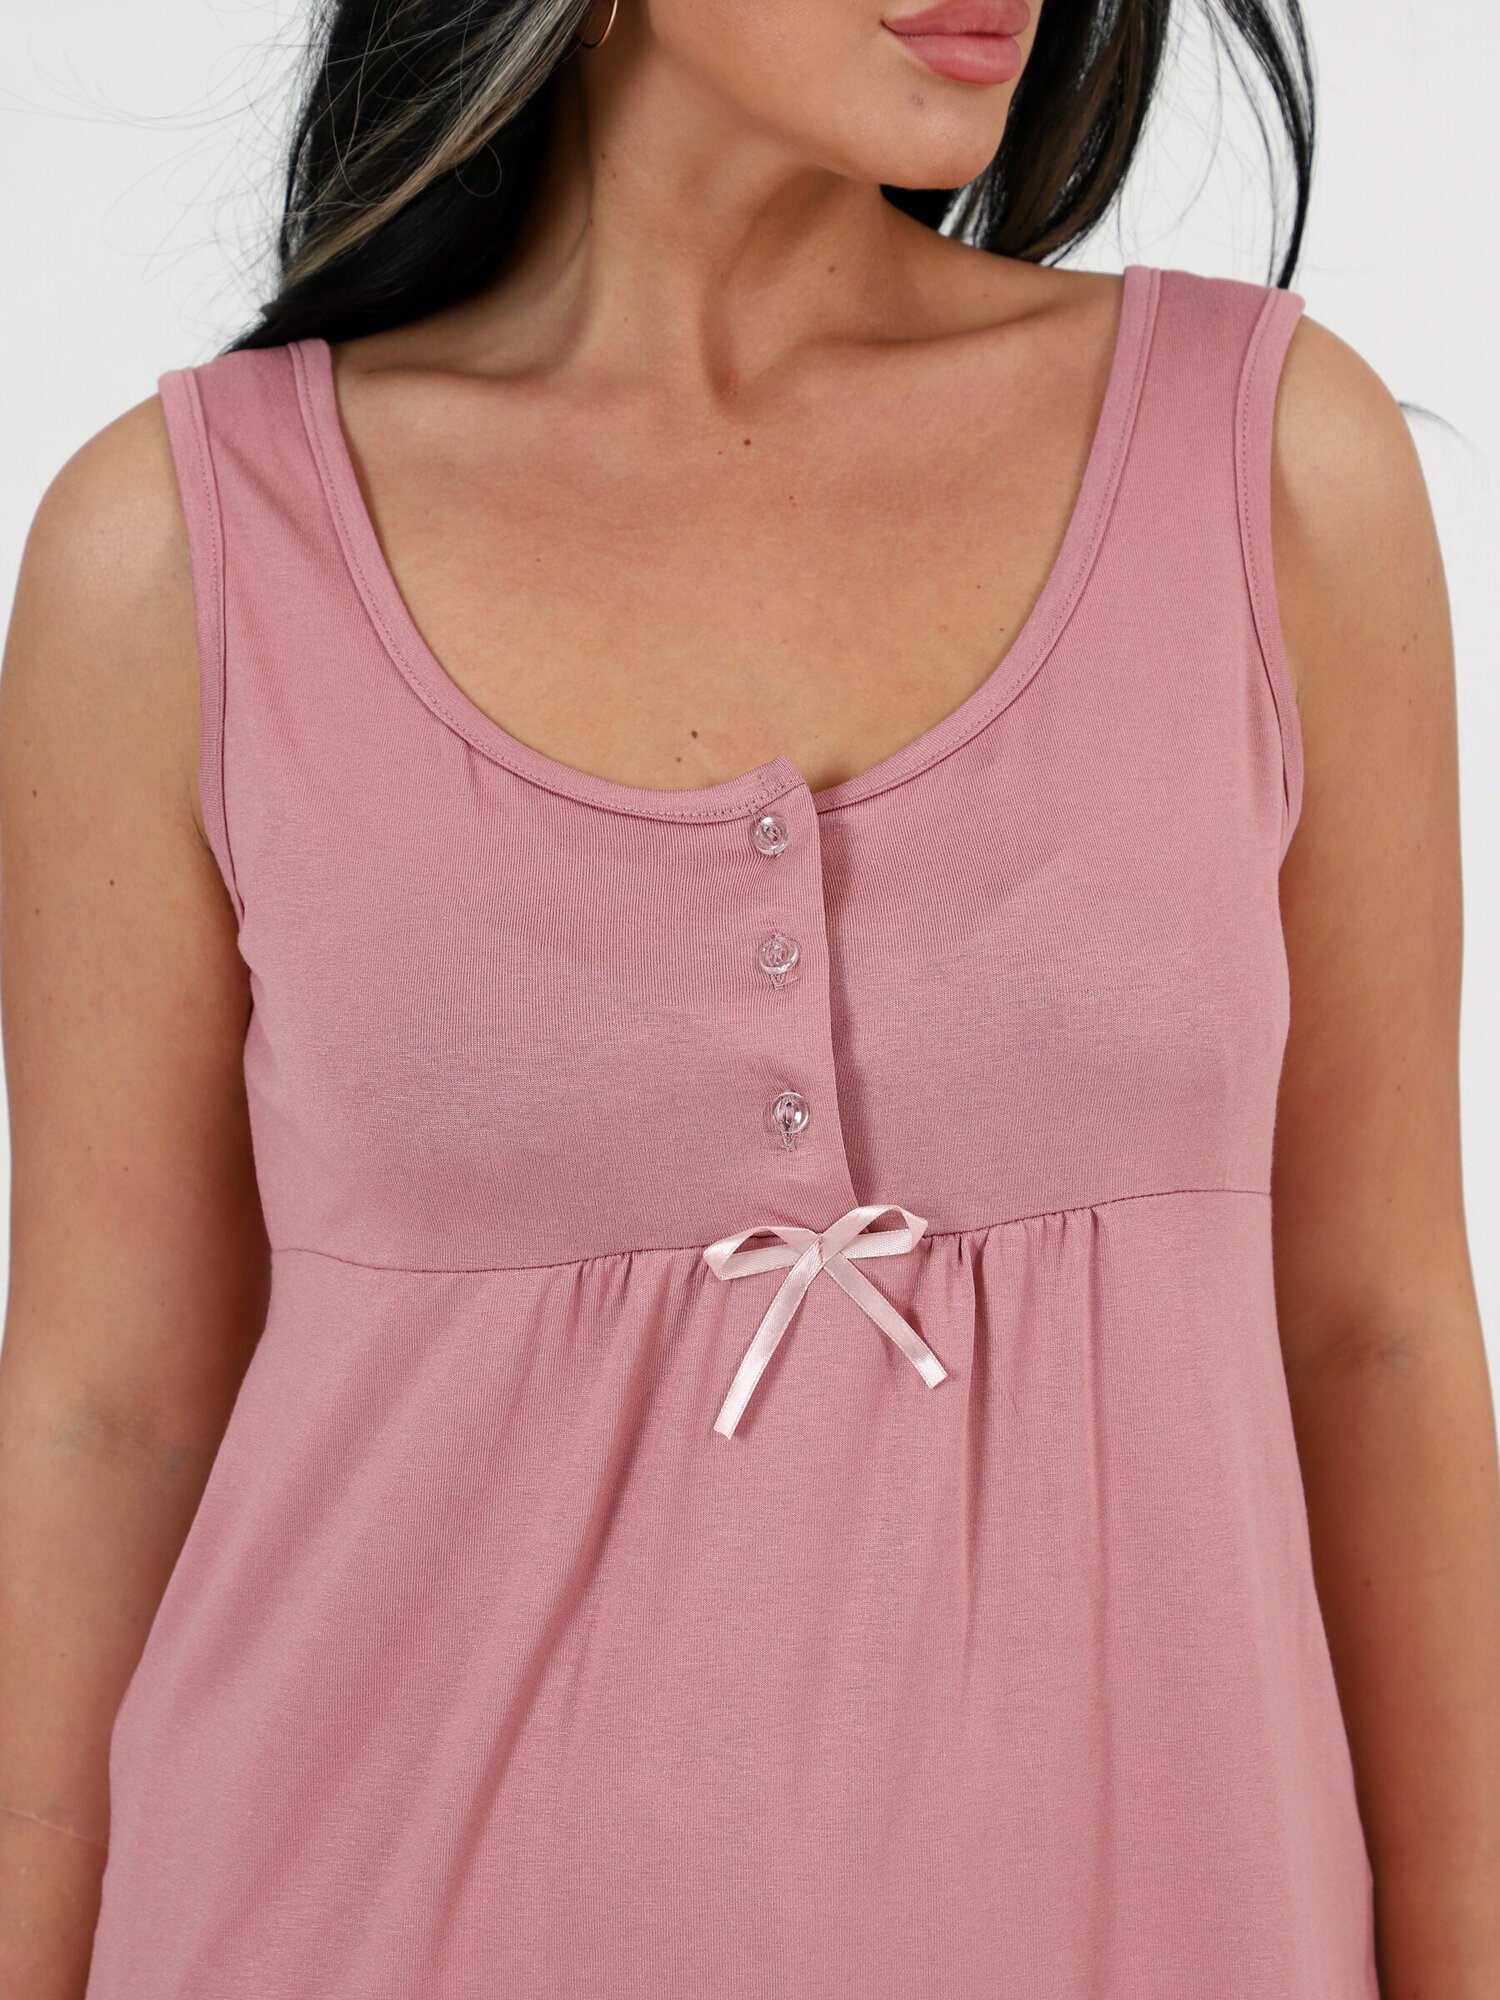 Пижама IvCapriz, майка, шорты, без рукава, пояс на резинке, трикотажная, без карманов, размер 62, розовый - фотография № 7